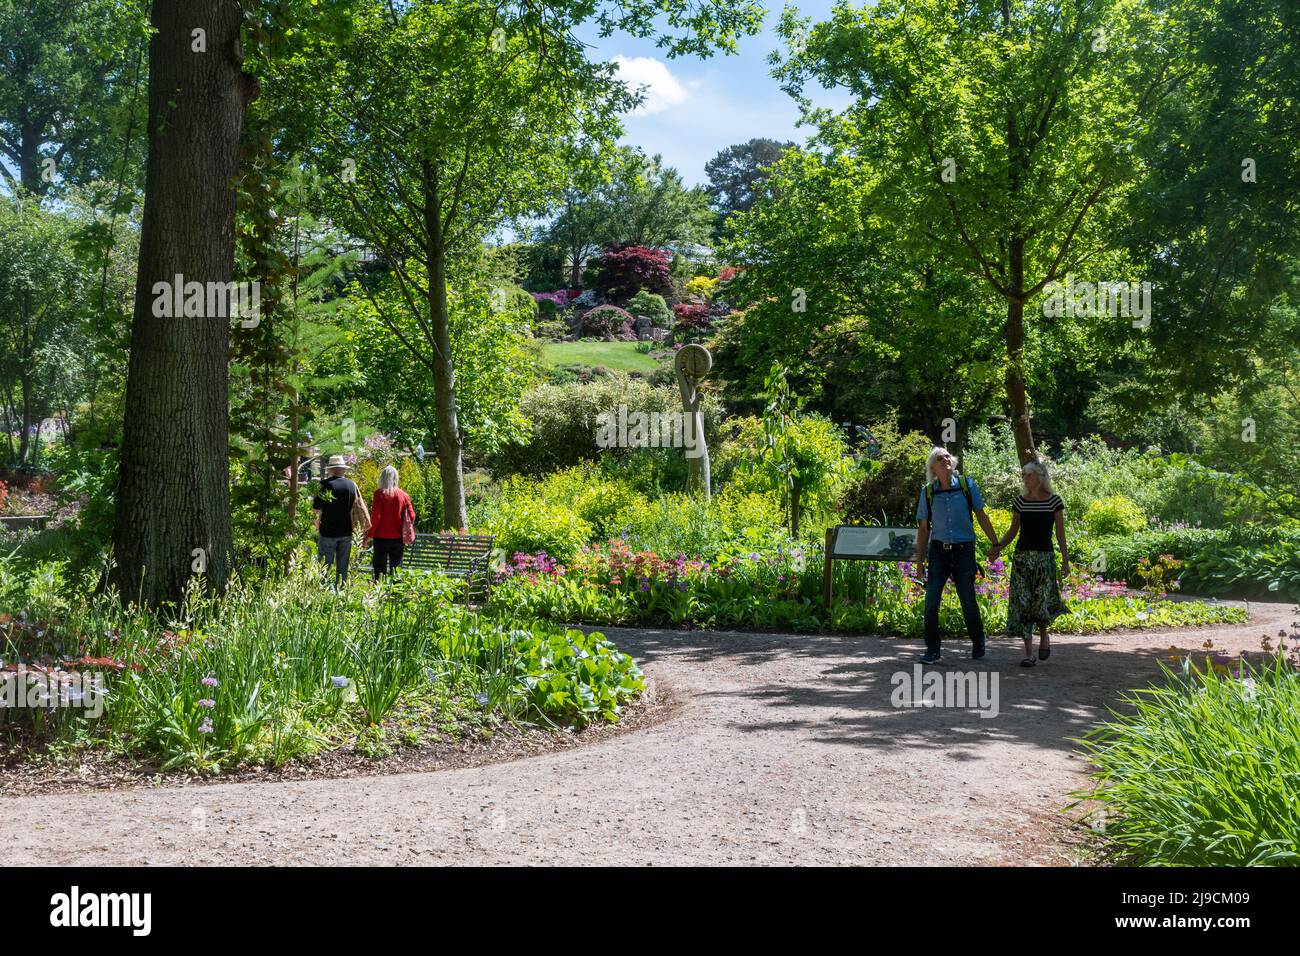 RHS Wisley Garden View, la région d'Oakwood ou le jardin sauvage en mai ou à la fin du printemps, Surrey, Angleterre, Royaume-Uni Banque D'Images